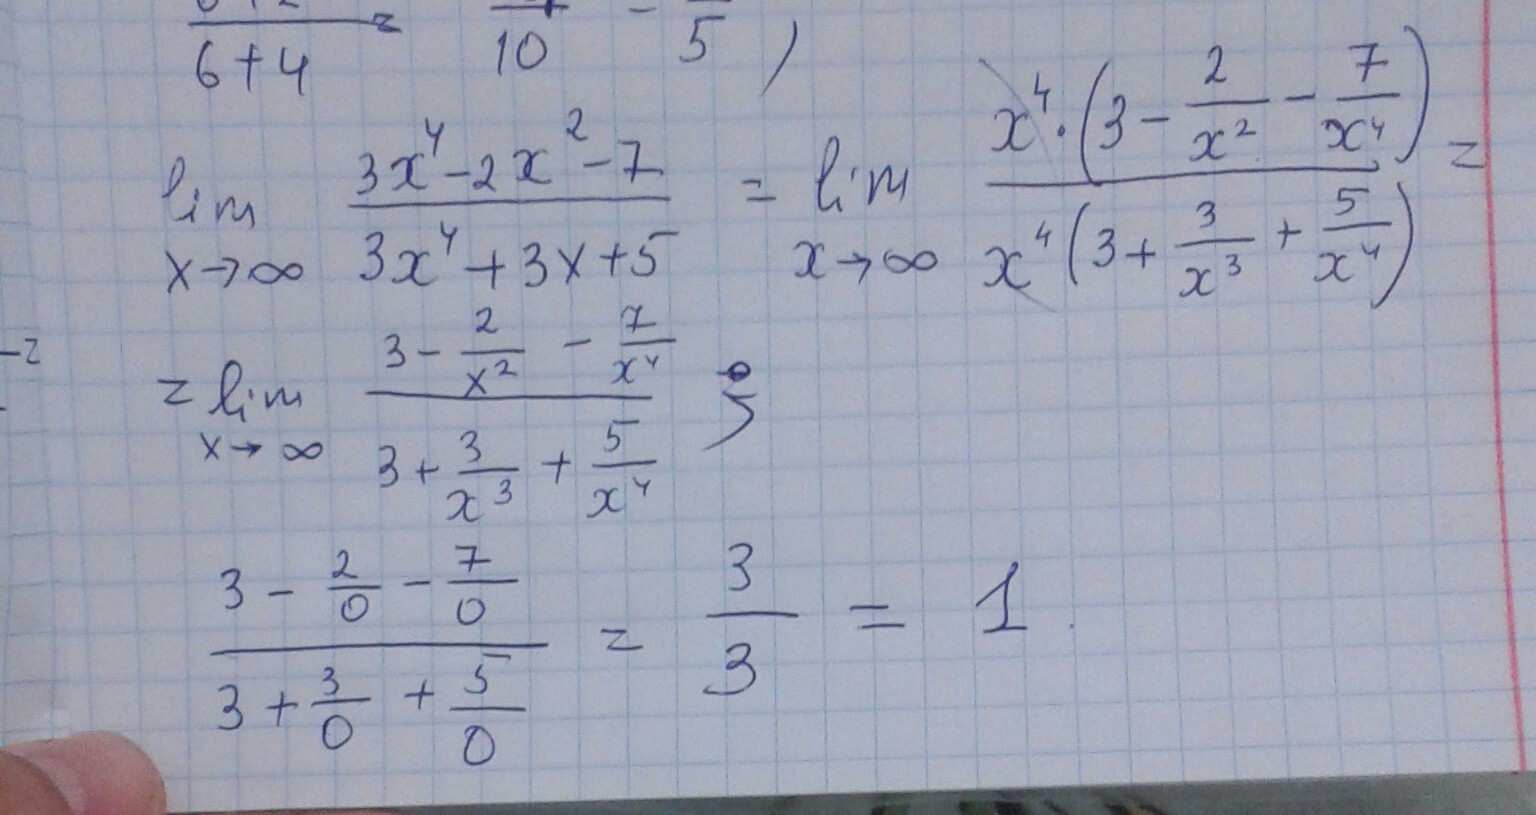 2x 7 4x 3 18 x. Lim x стремится к бесконечности 2/x 2+3x. Lim x стремится к бесконечности x^2-4x+3/x+5. Lim x стремиться к бесконечности ( 2x/2x-3)^3x. Lim x стремится к бесконечности 3+x-5x4.